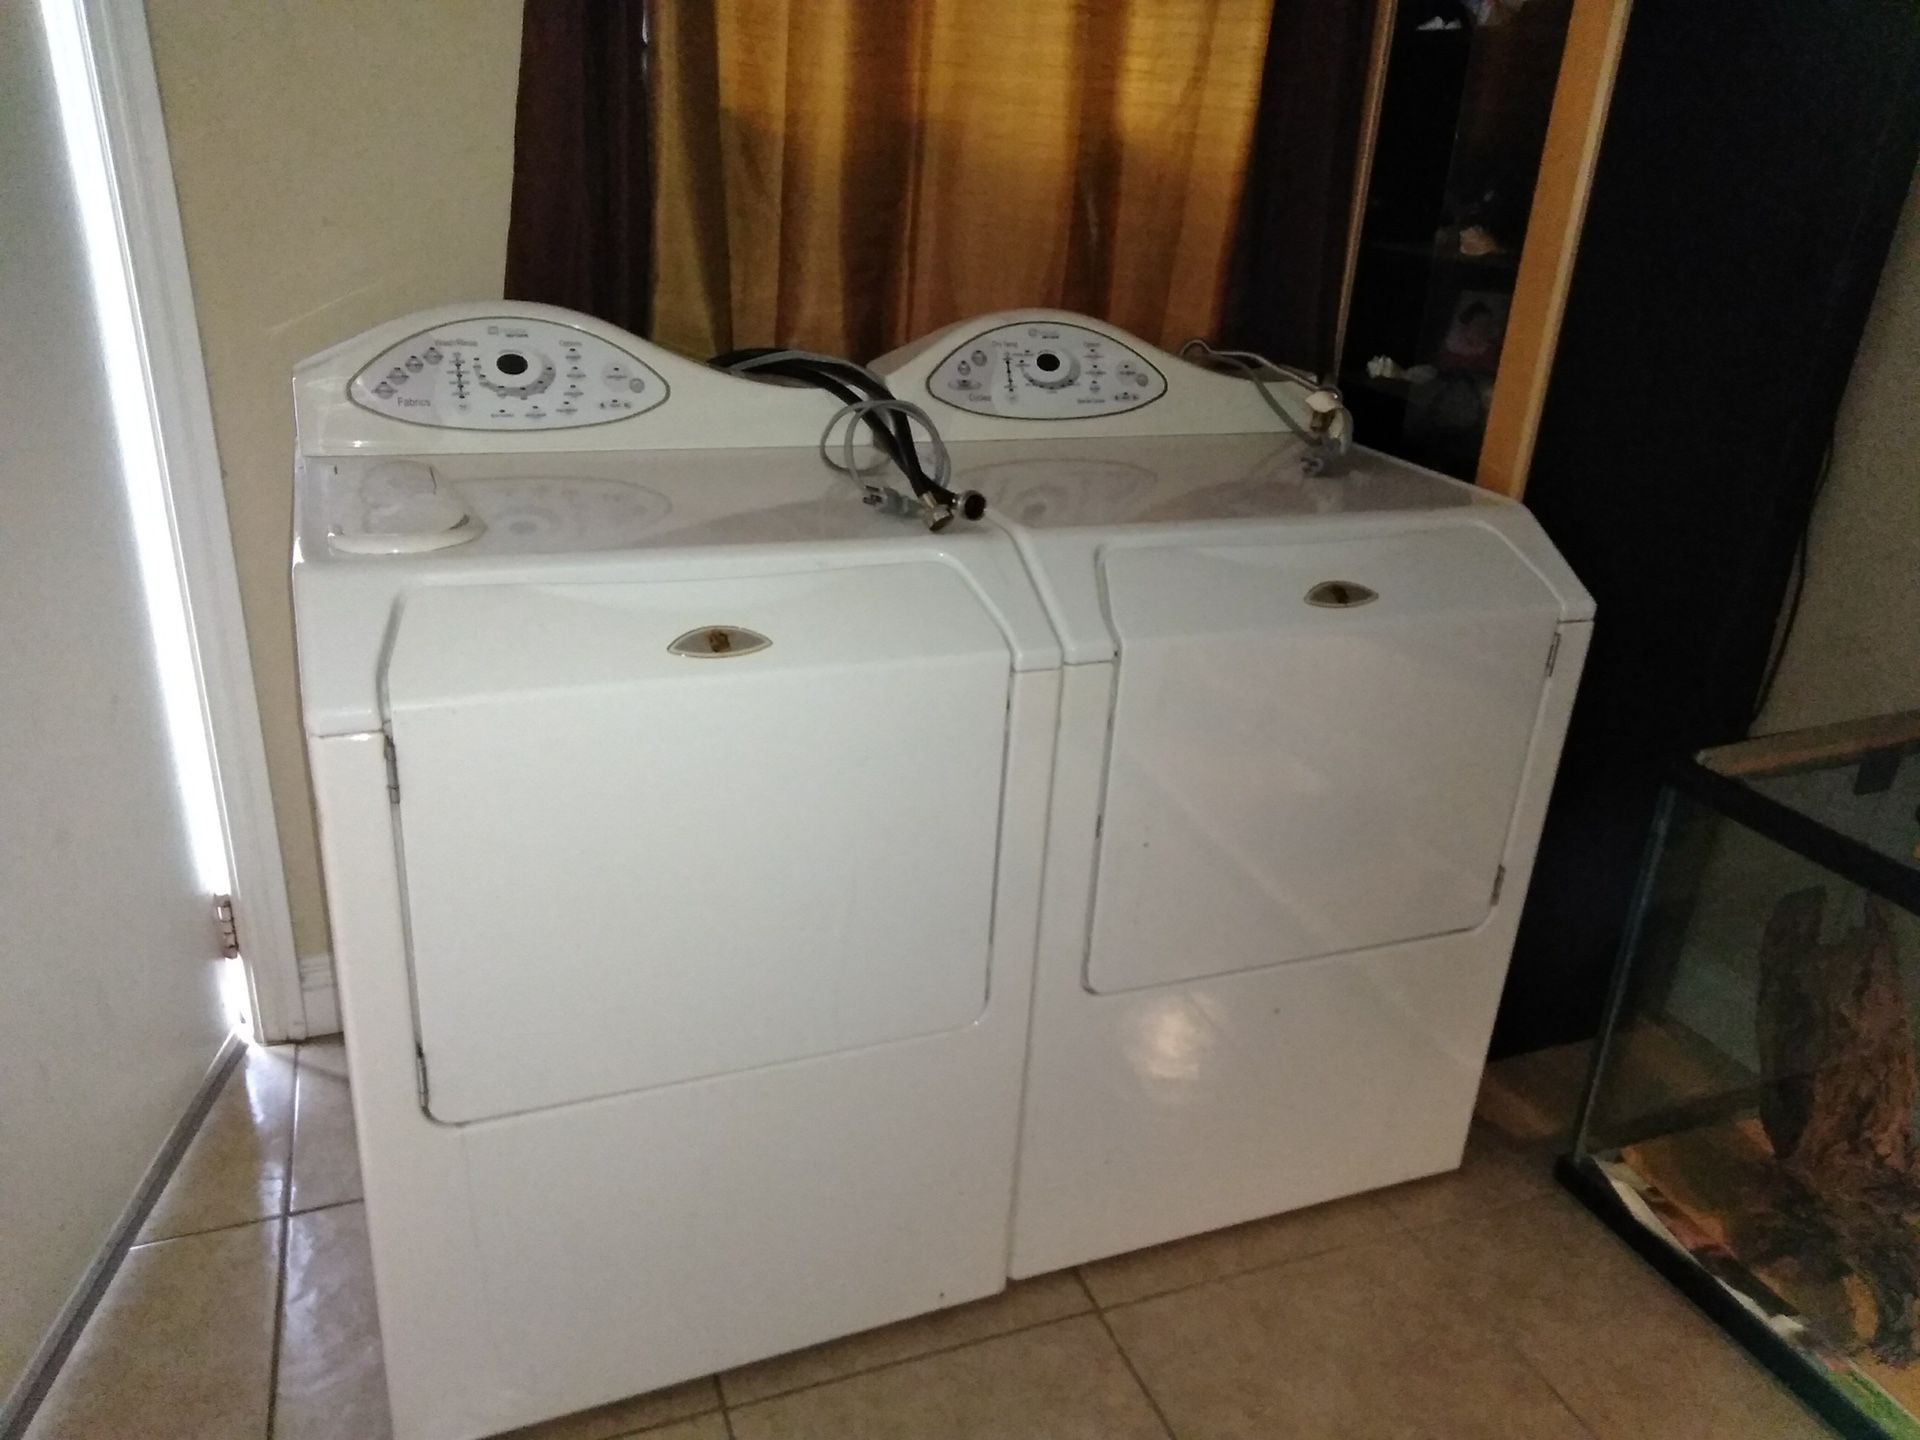 Maytag washer & dryer set